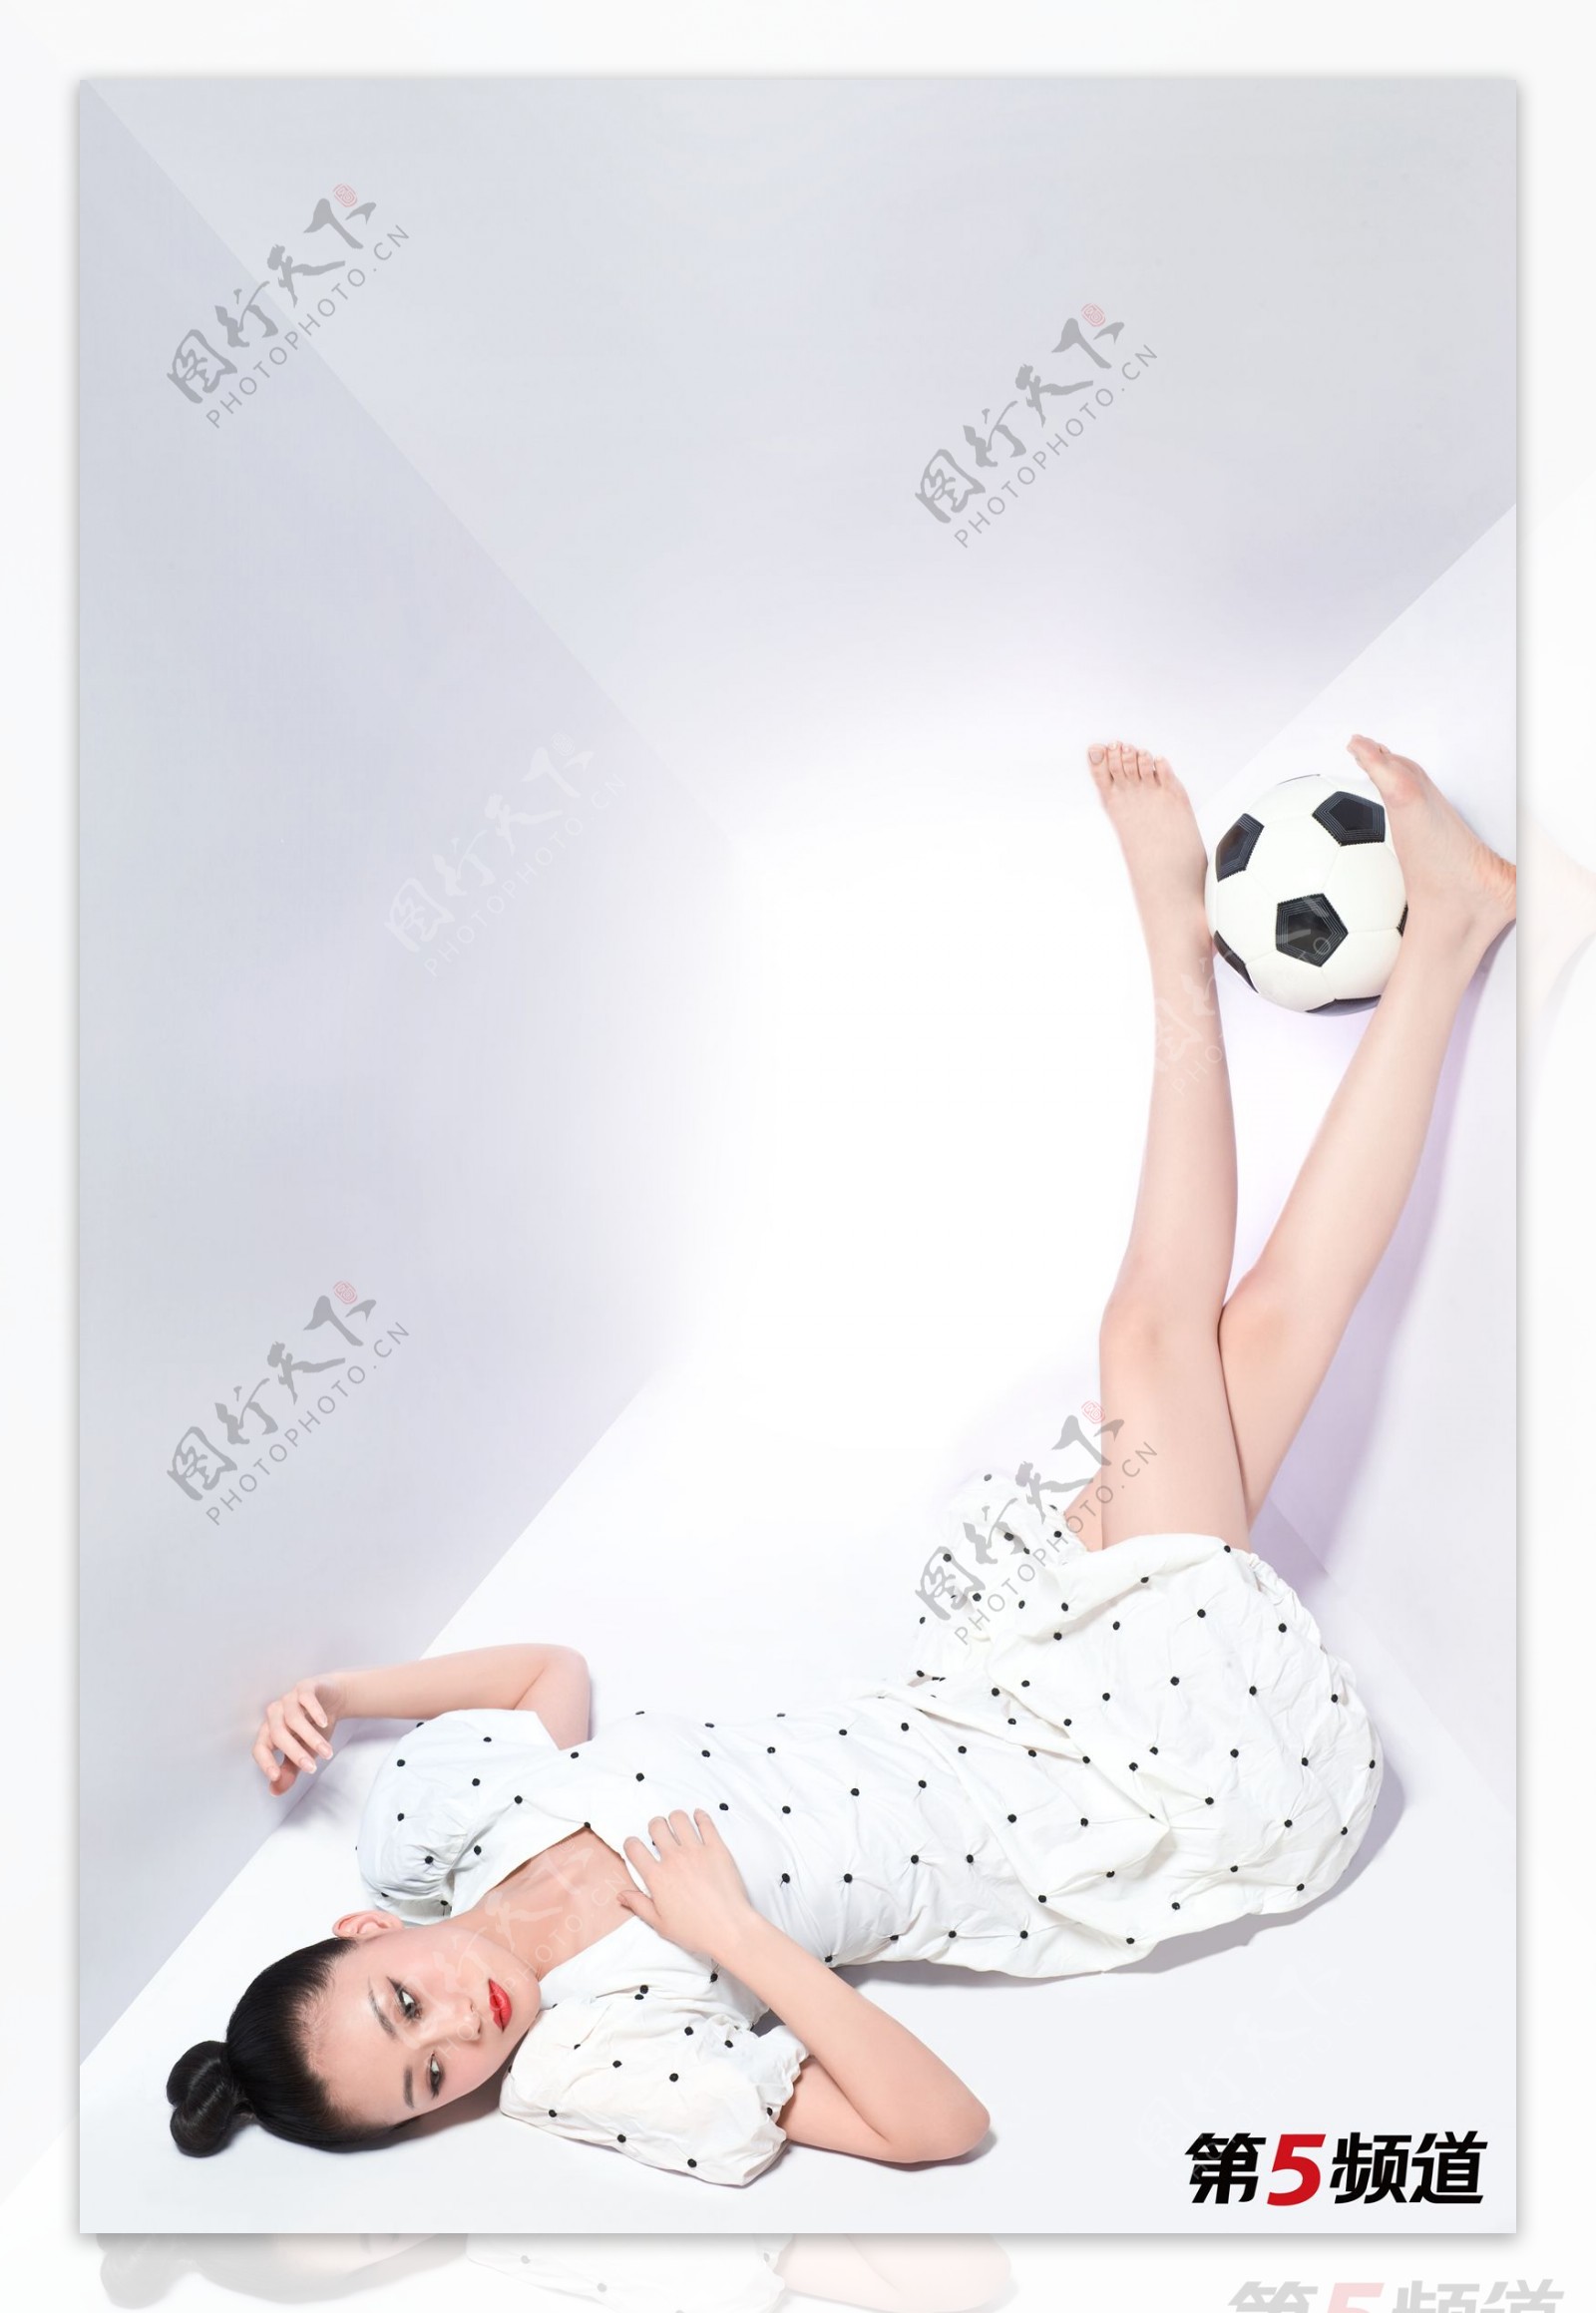 林鹏世界杯足球宝贝造型图片